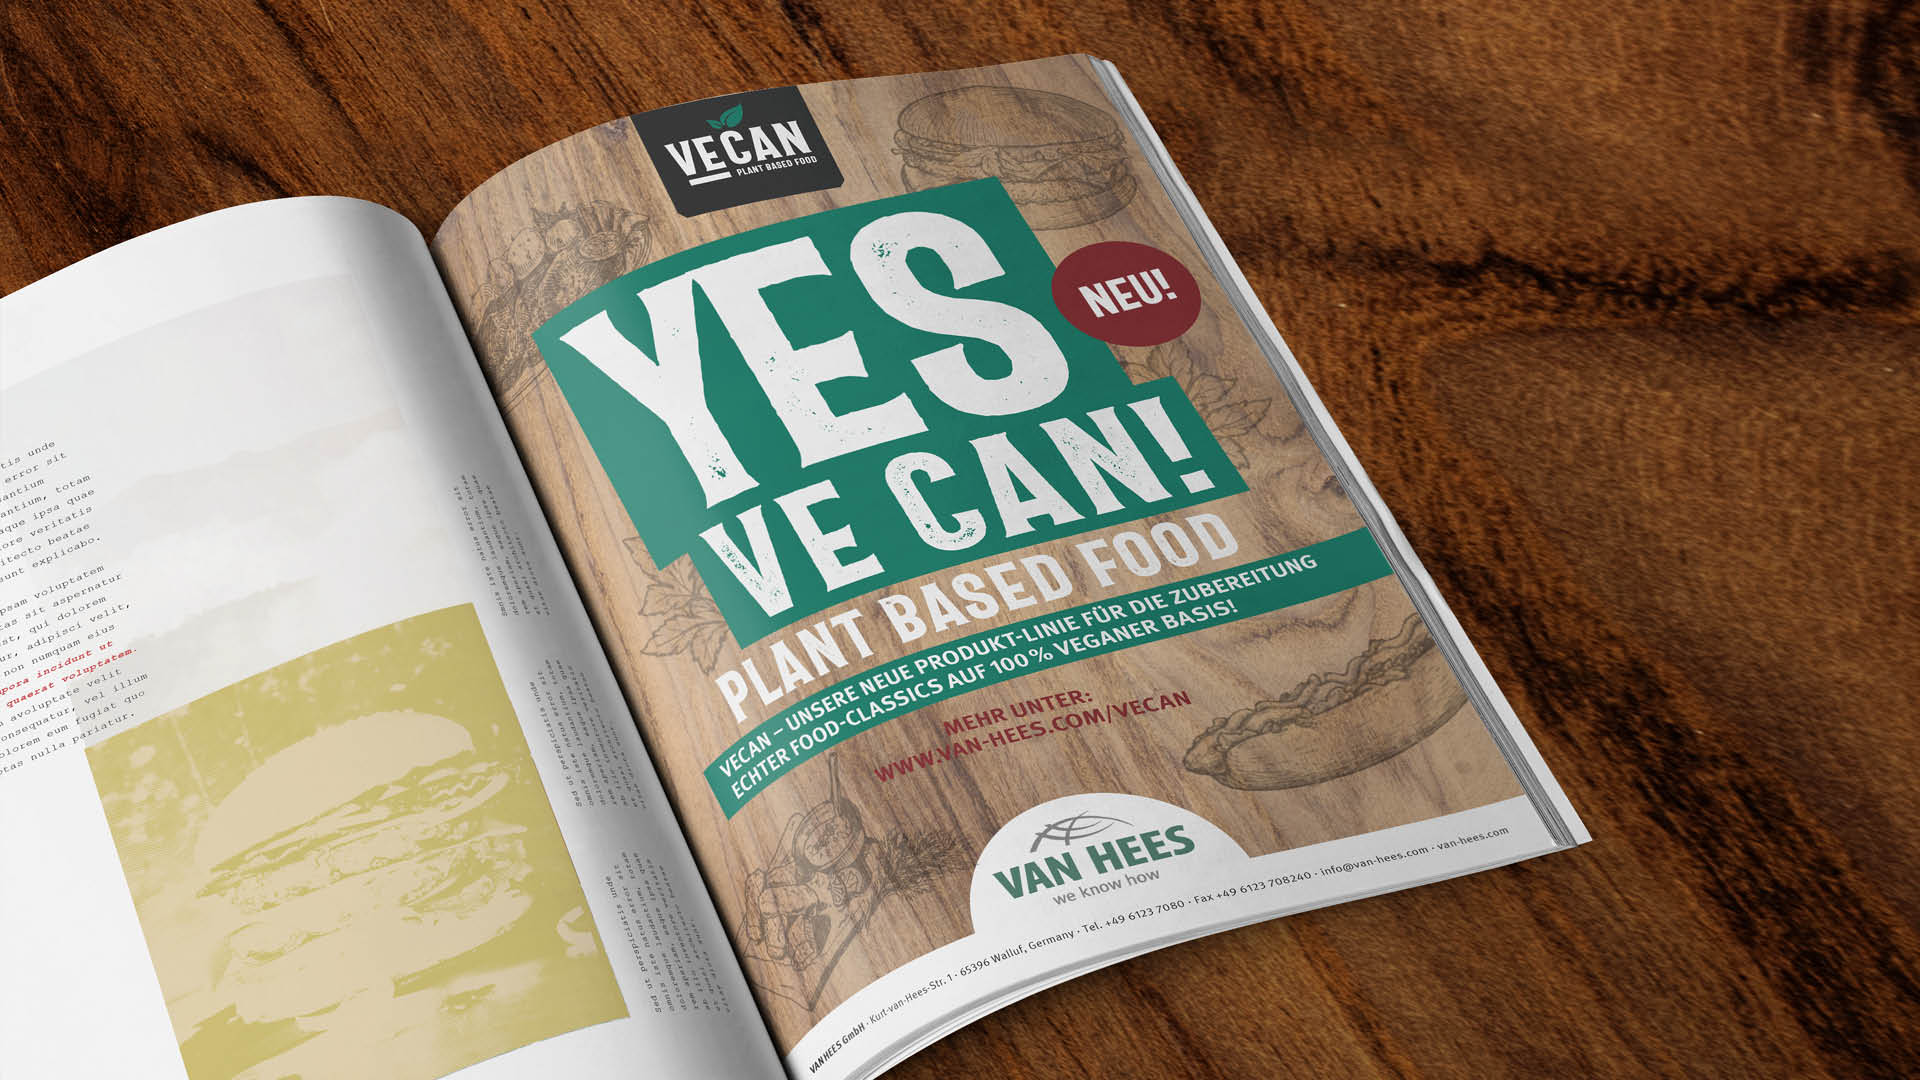 BRAINARTIST: „VECAN plant based food“ von VAN HEES in Print